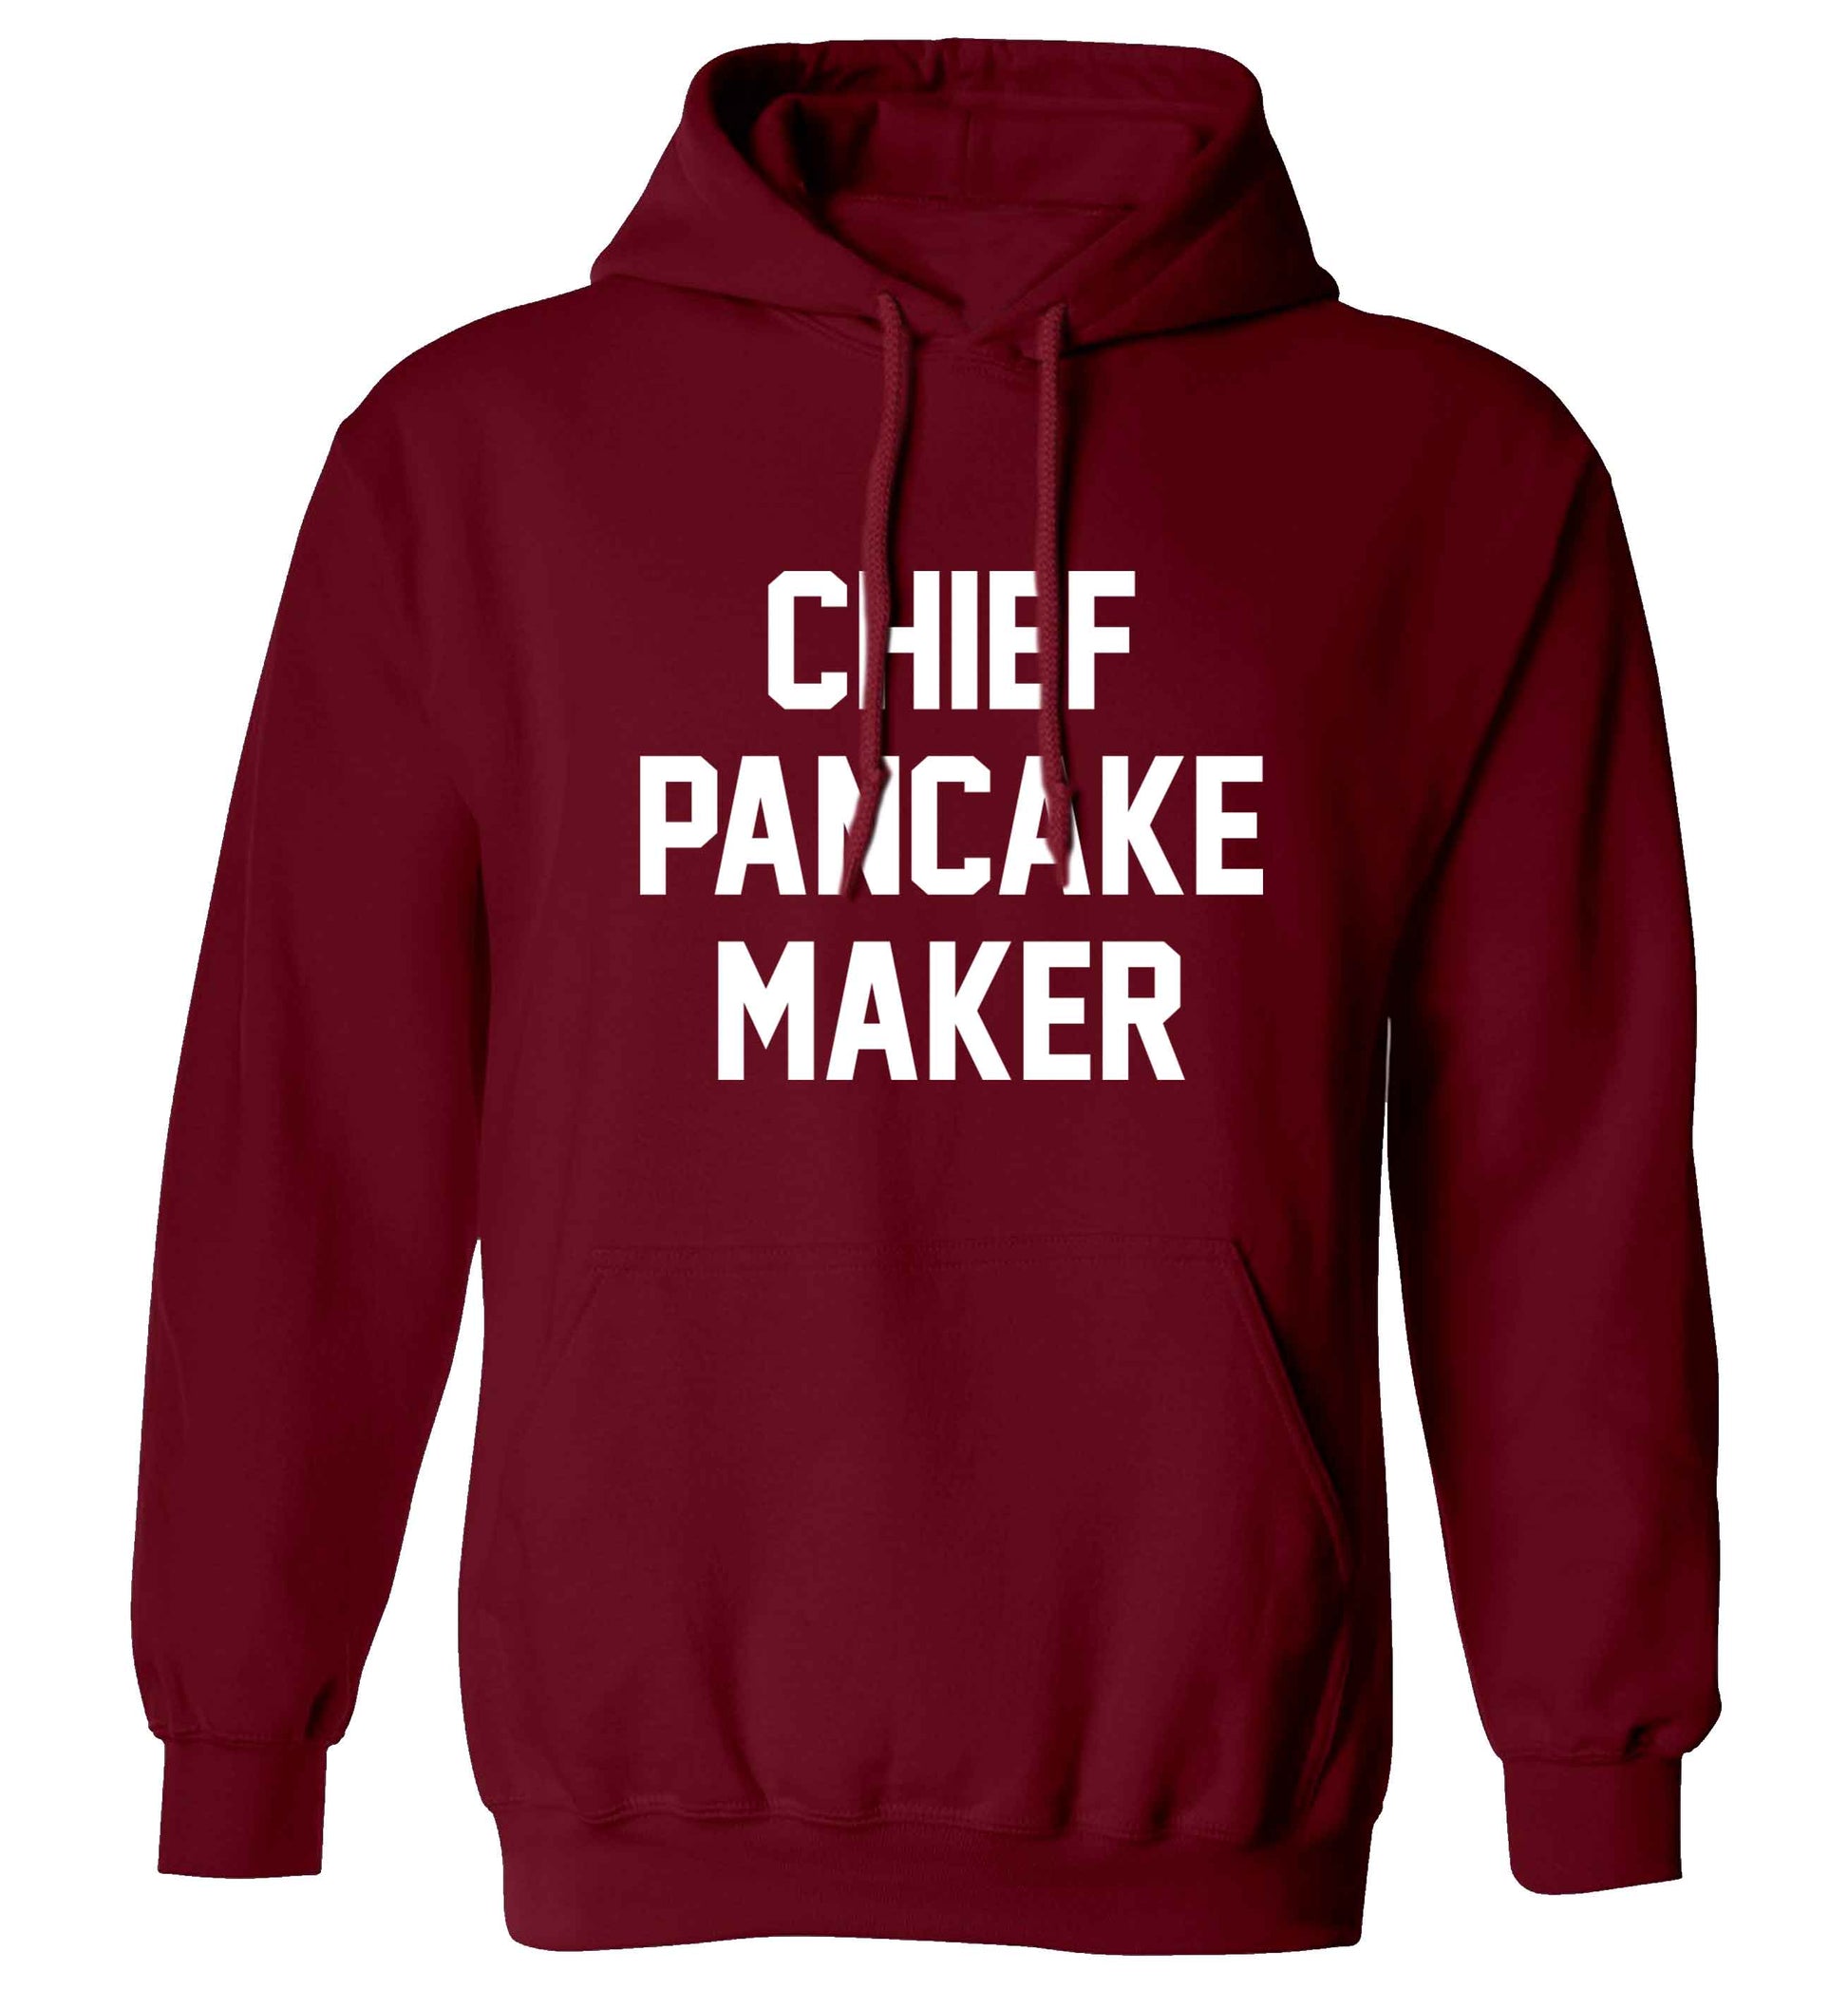 Chief pancake maker adults unisex maroon hoodie 2XL